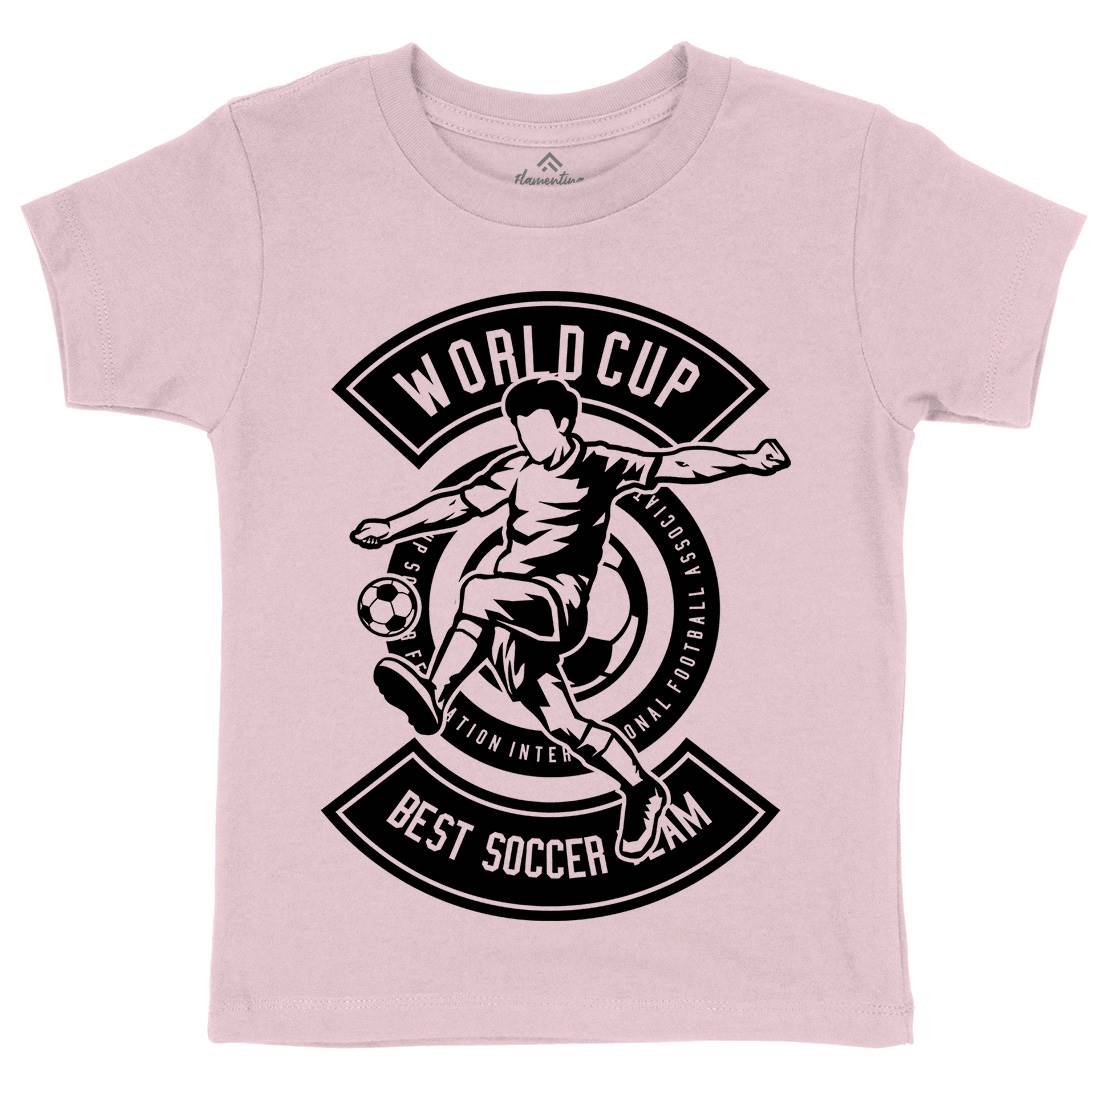 World Cup Soccer Kids Organic Crew Neck T-Shirt Sport B675